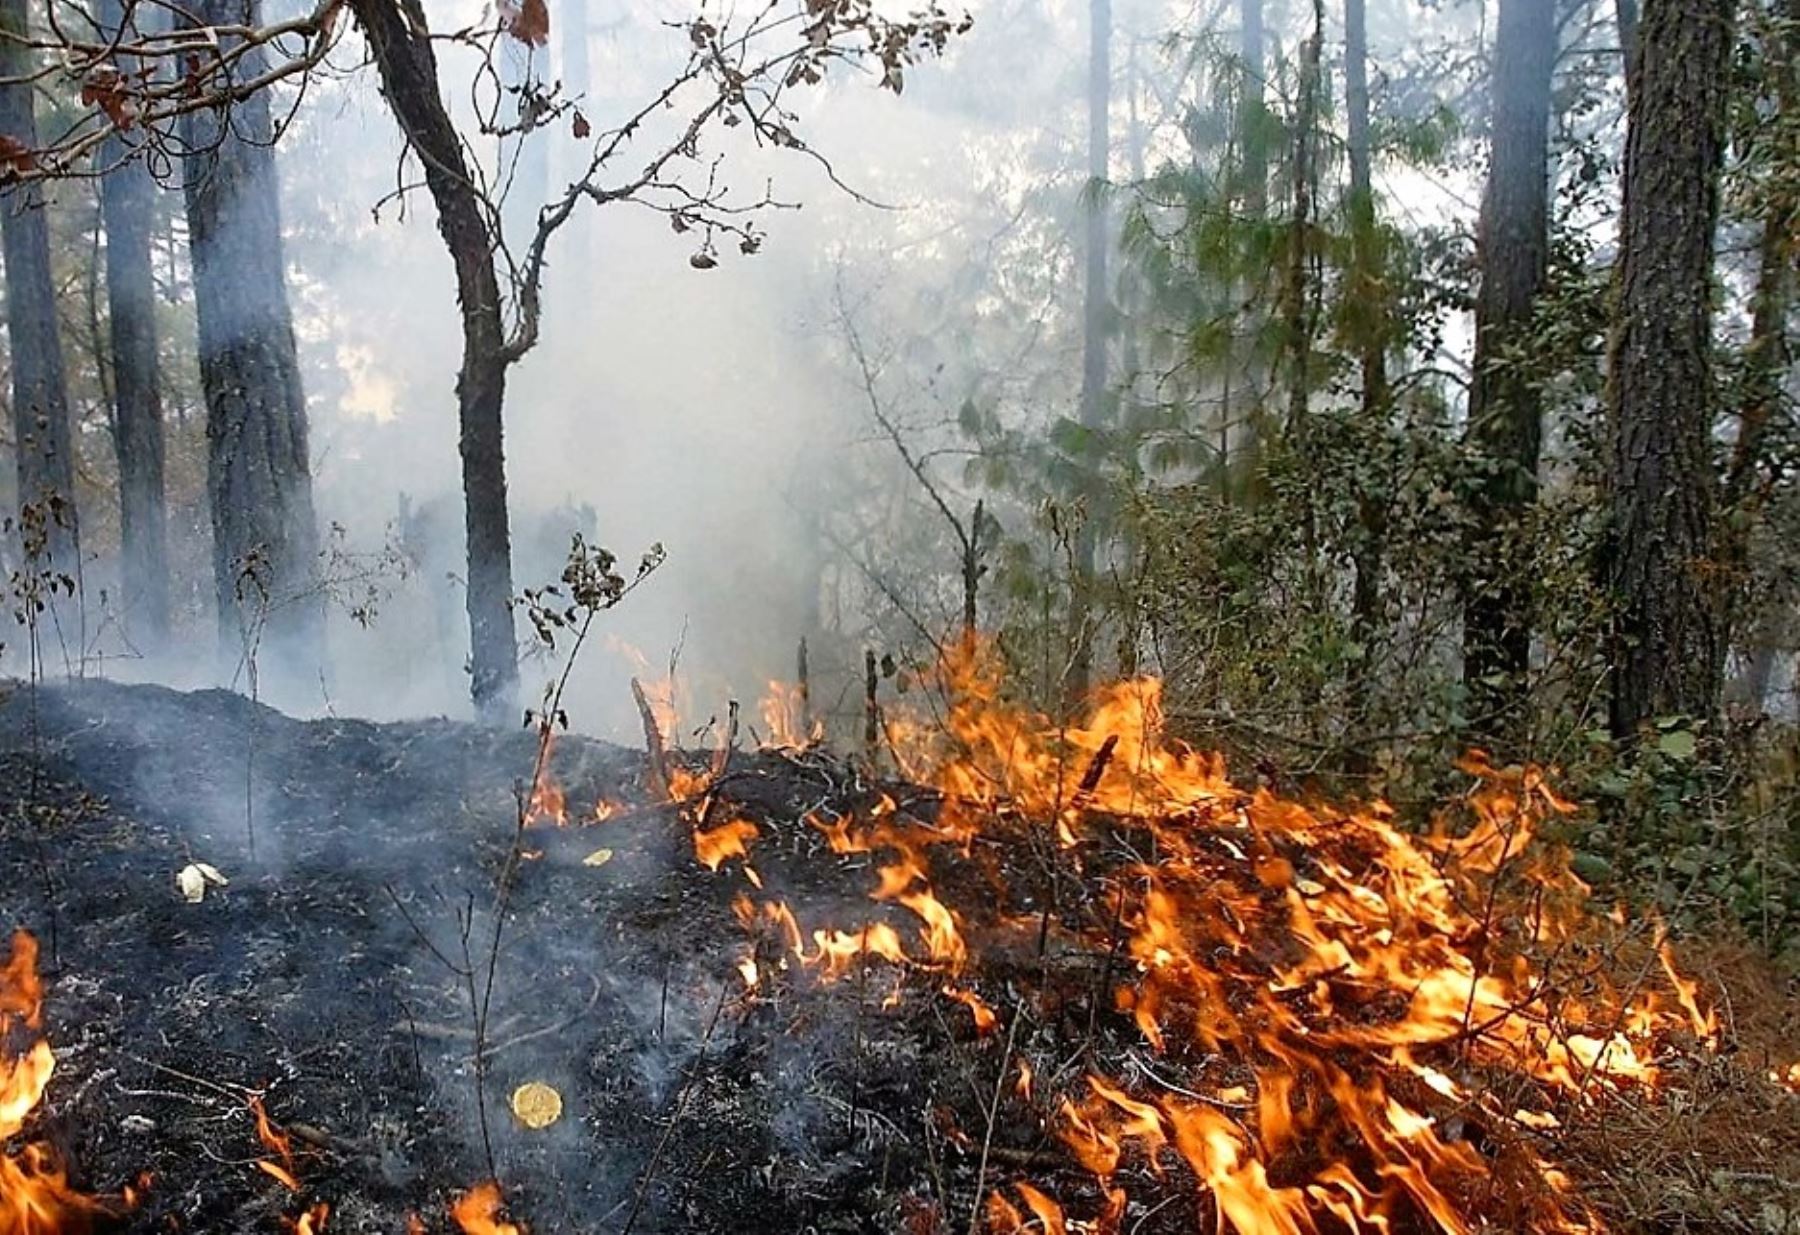 La mayoría de incendios forestales en nuestro país ocurren por actividad humana, como la quema de residuos de las cosechas y pastizales, preparación de alimentos y el uso de fósforo y cigarros, entre otros.ANDINA